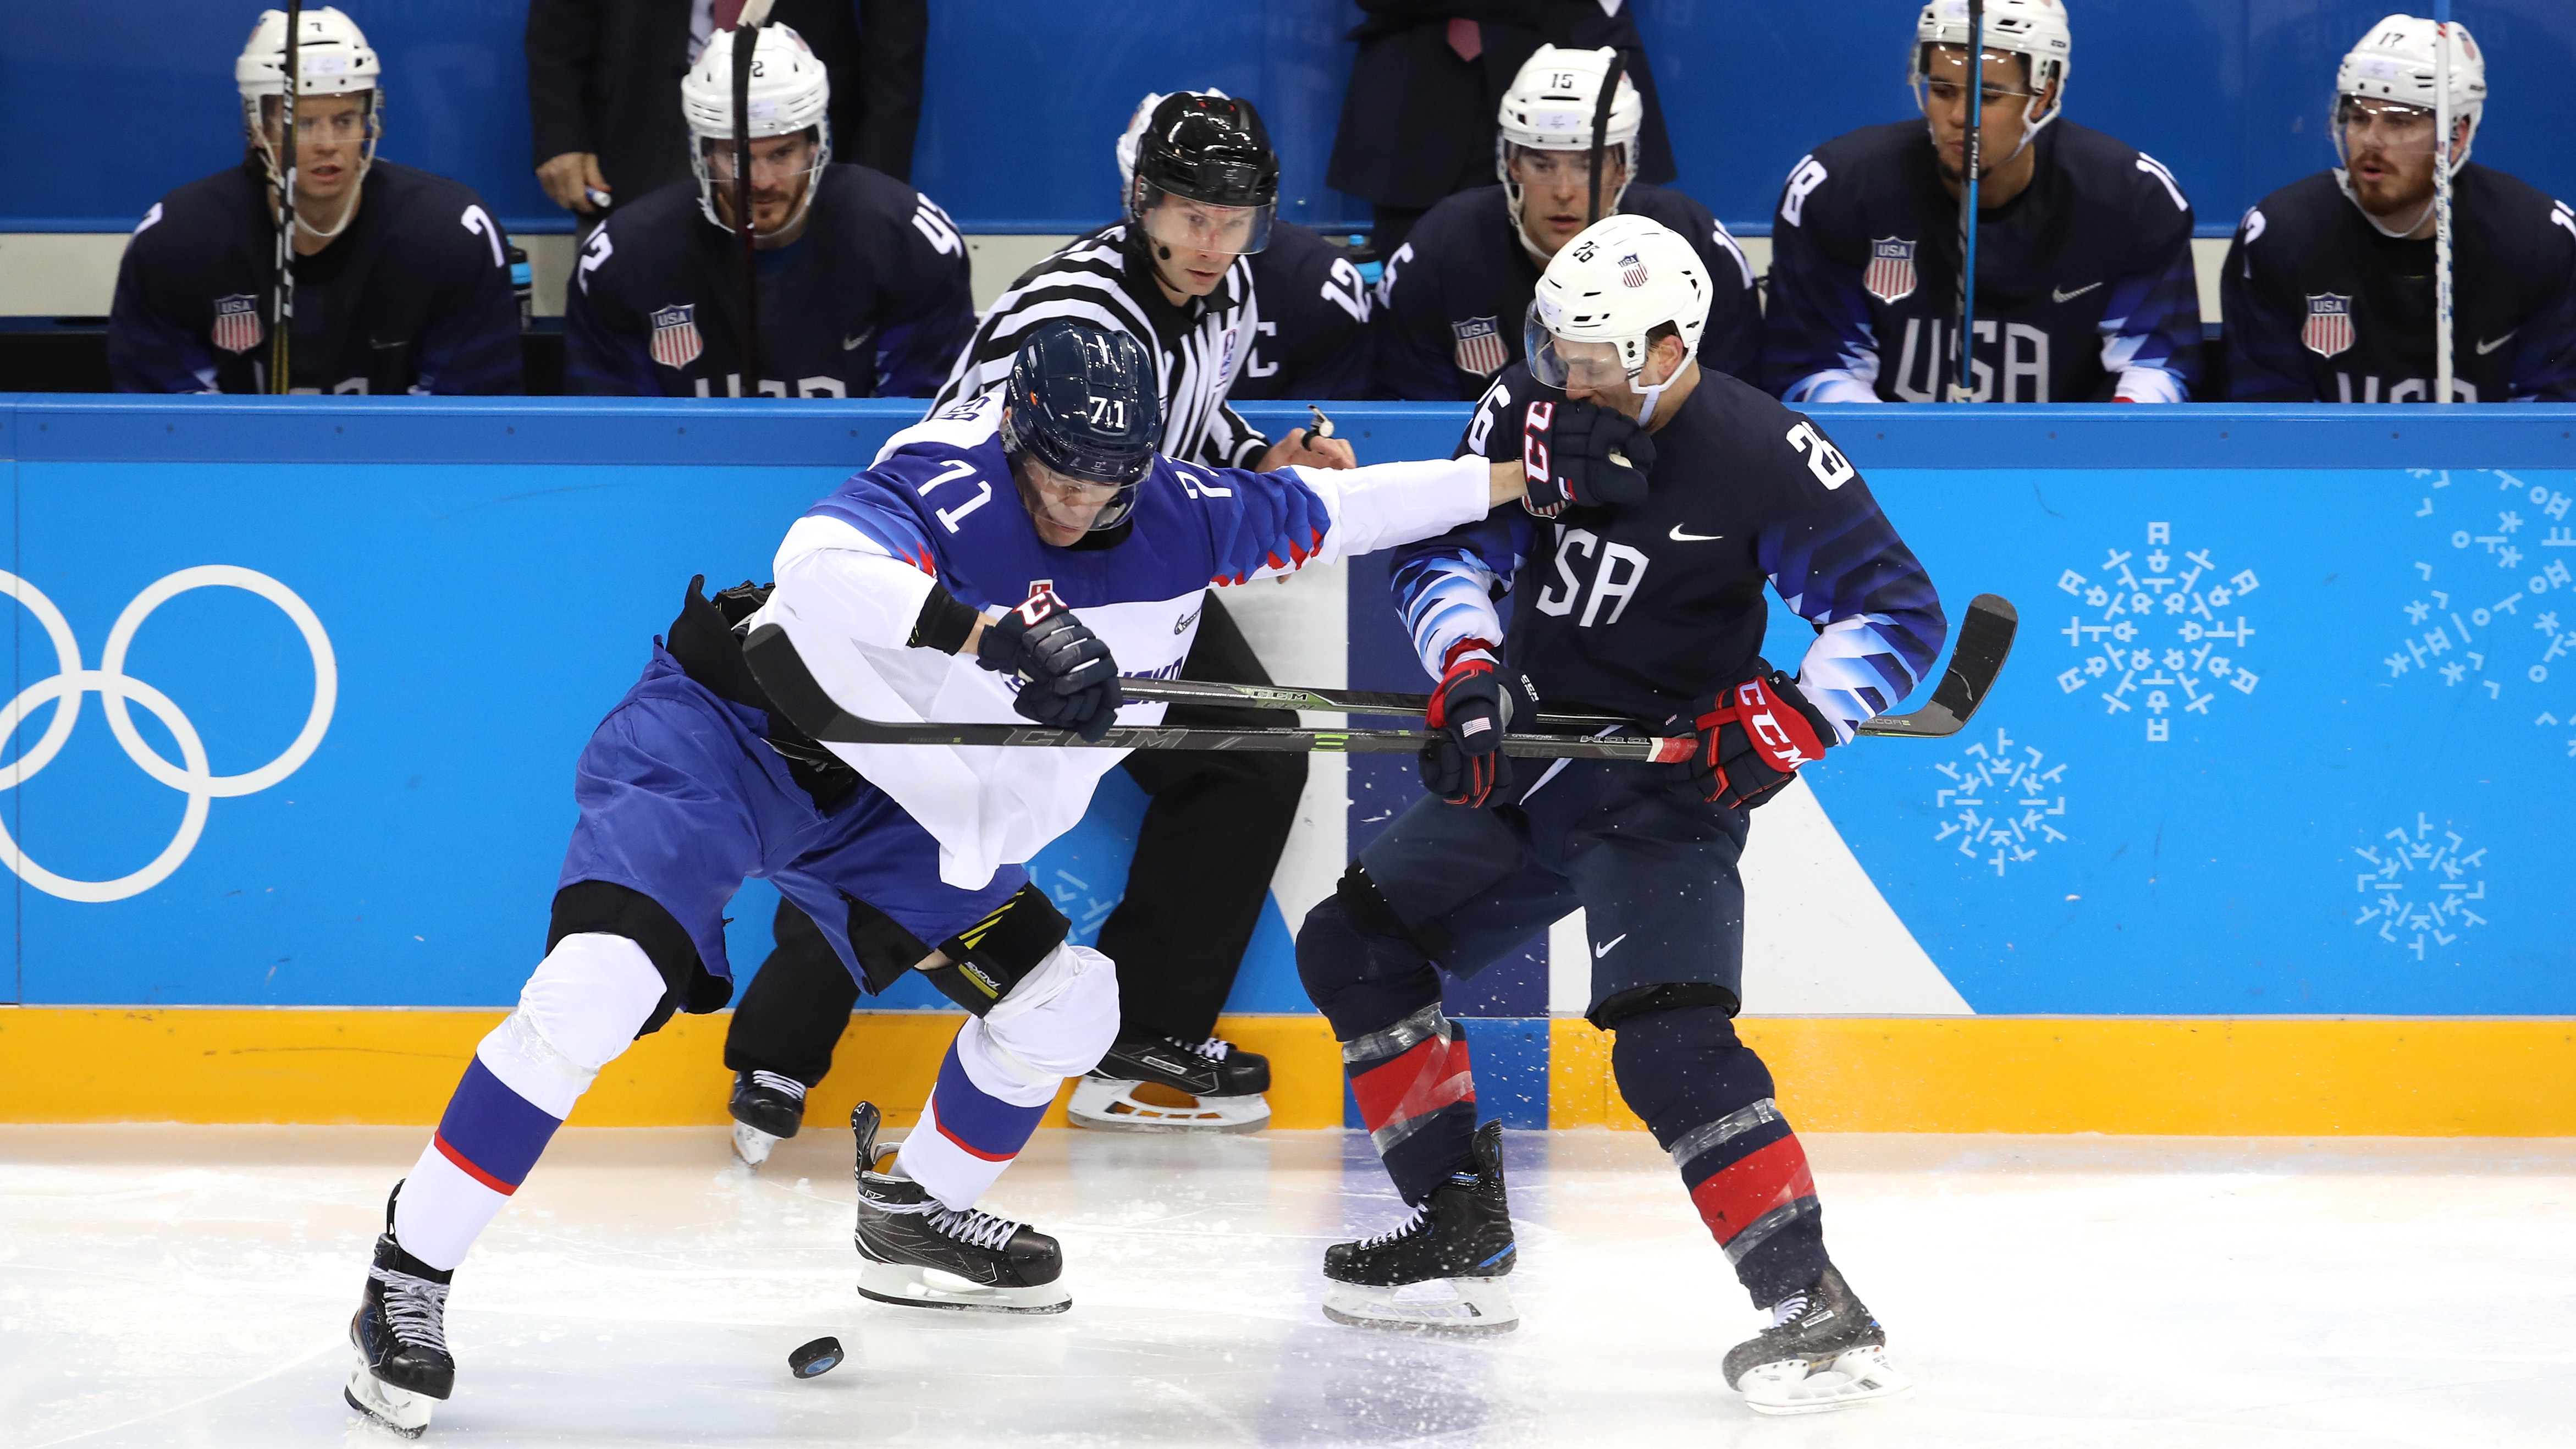 U.S. men's hockey team must play up-tempo in Winter Olympics rematch with Slovakia.

Translation: El equipo masculino de hockey de Estados Unidos debe jugar a un ritmo rápido en la revancha de los Juegos Olímpicos de Invierno contra Eslovaquia.